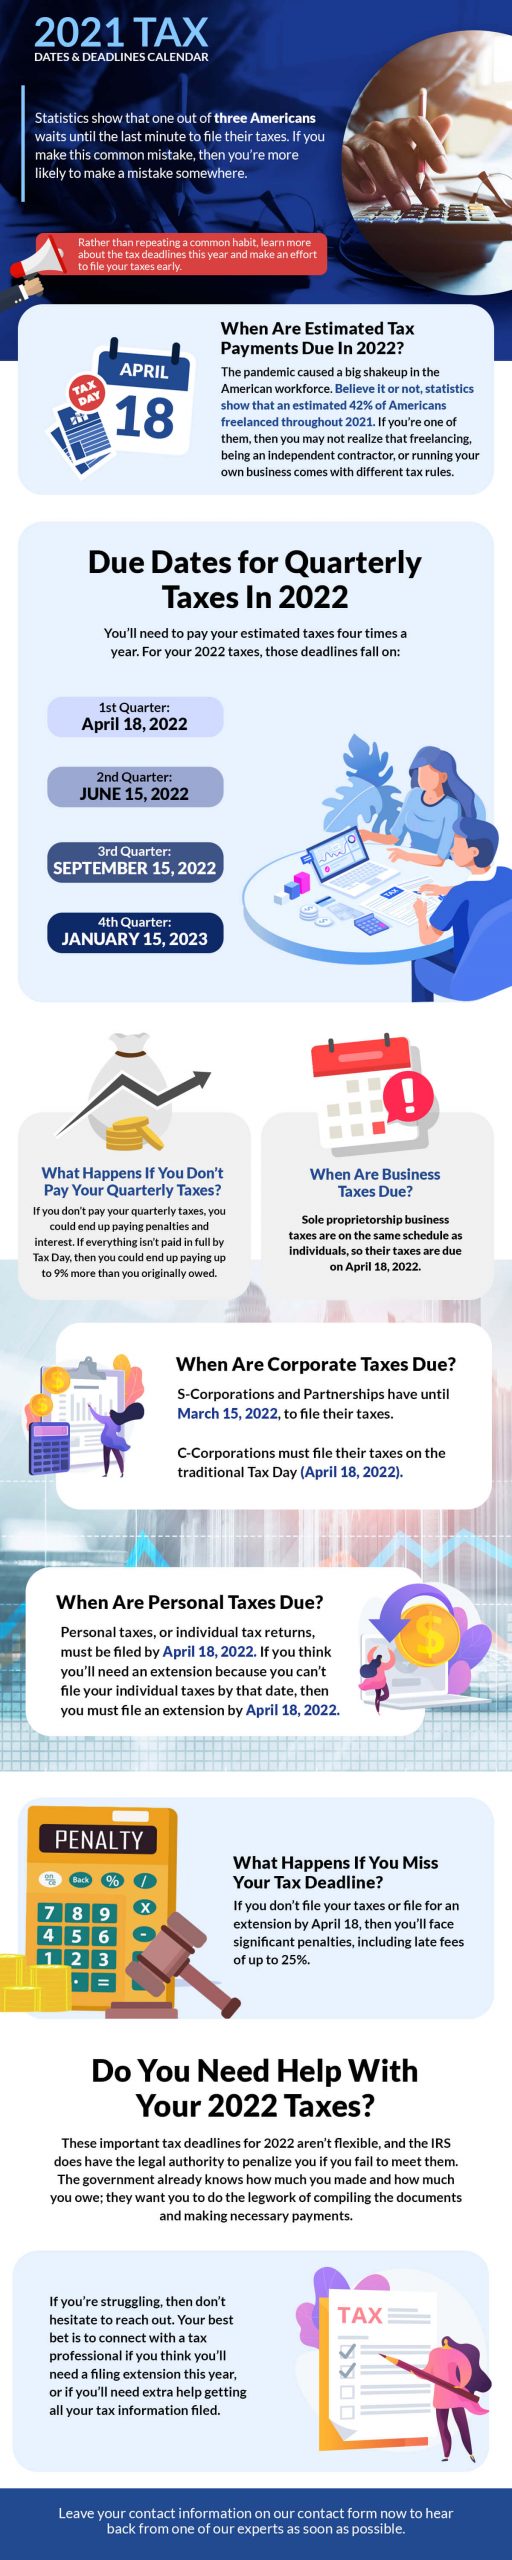 2020 Tax Dates & Deadlines Calendar